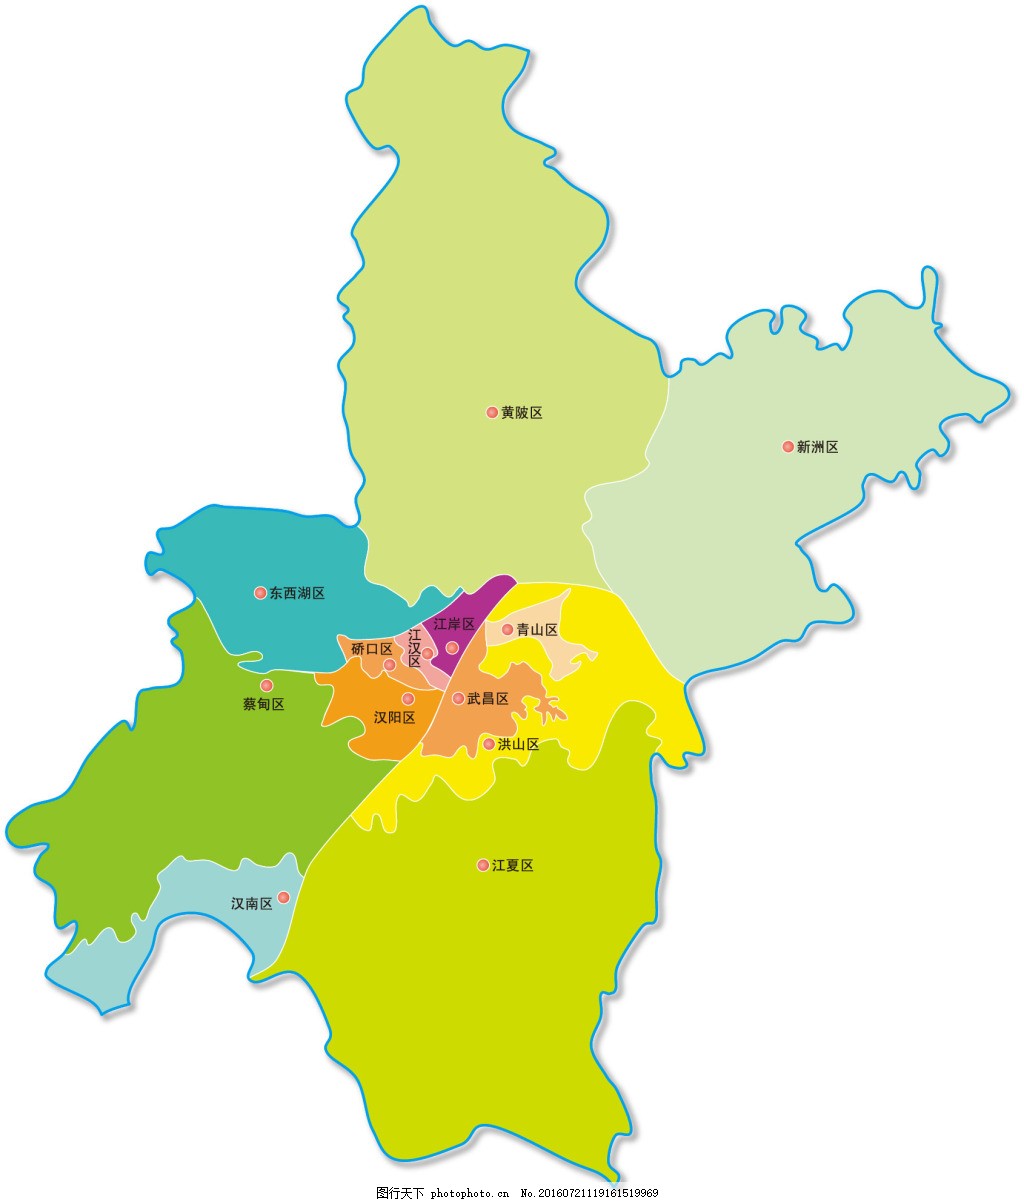 武汉市高清卫星地图 - 武汉市2014年卫星地图 - 中国湖北省武汉市地图图片